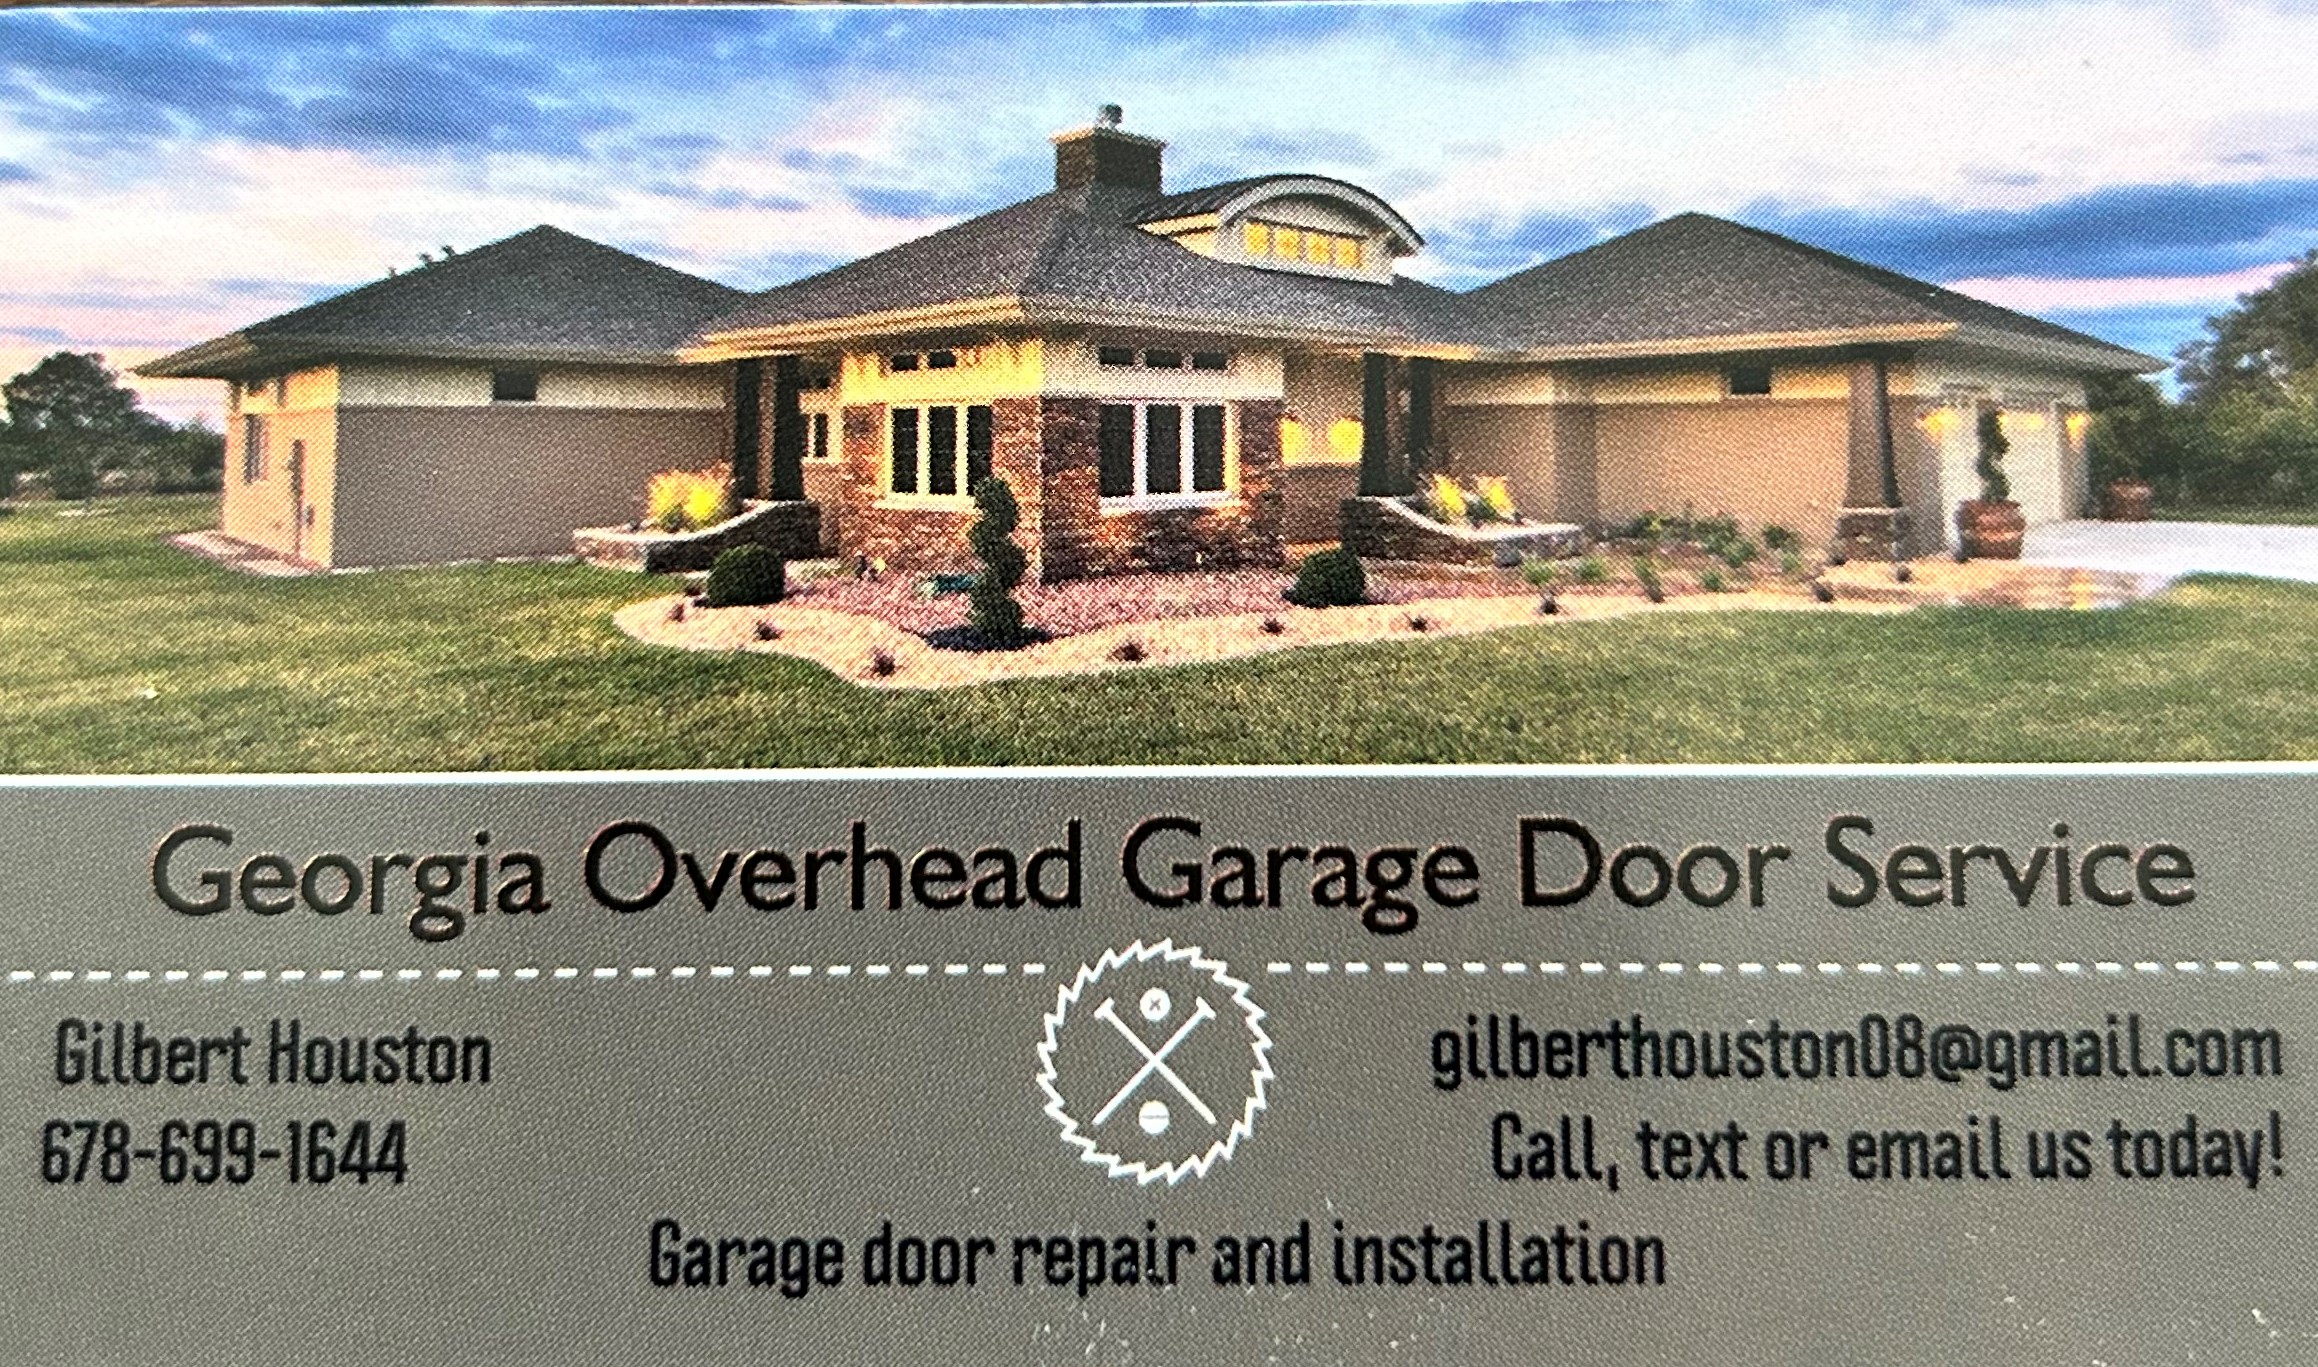 Georgia Overhead Garage Door Service Logo